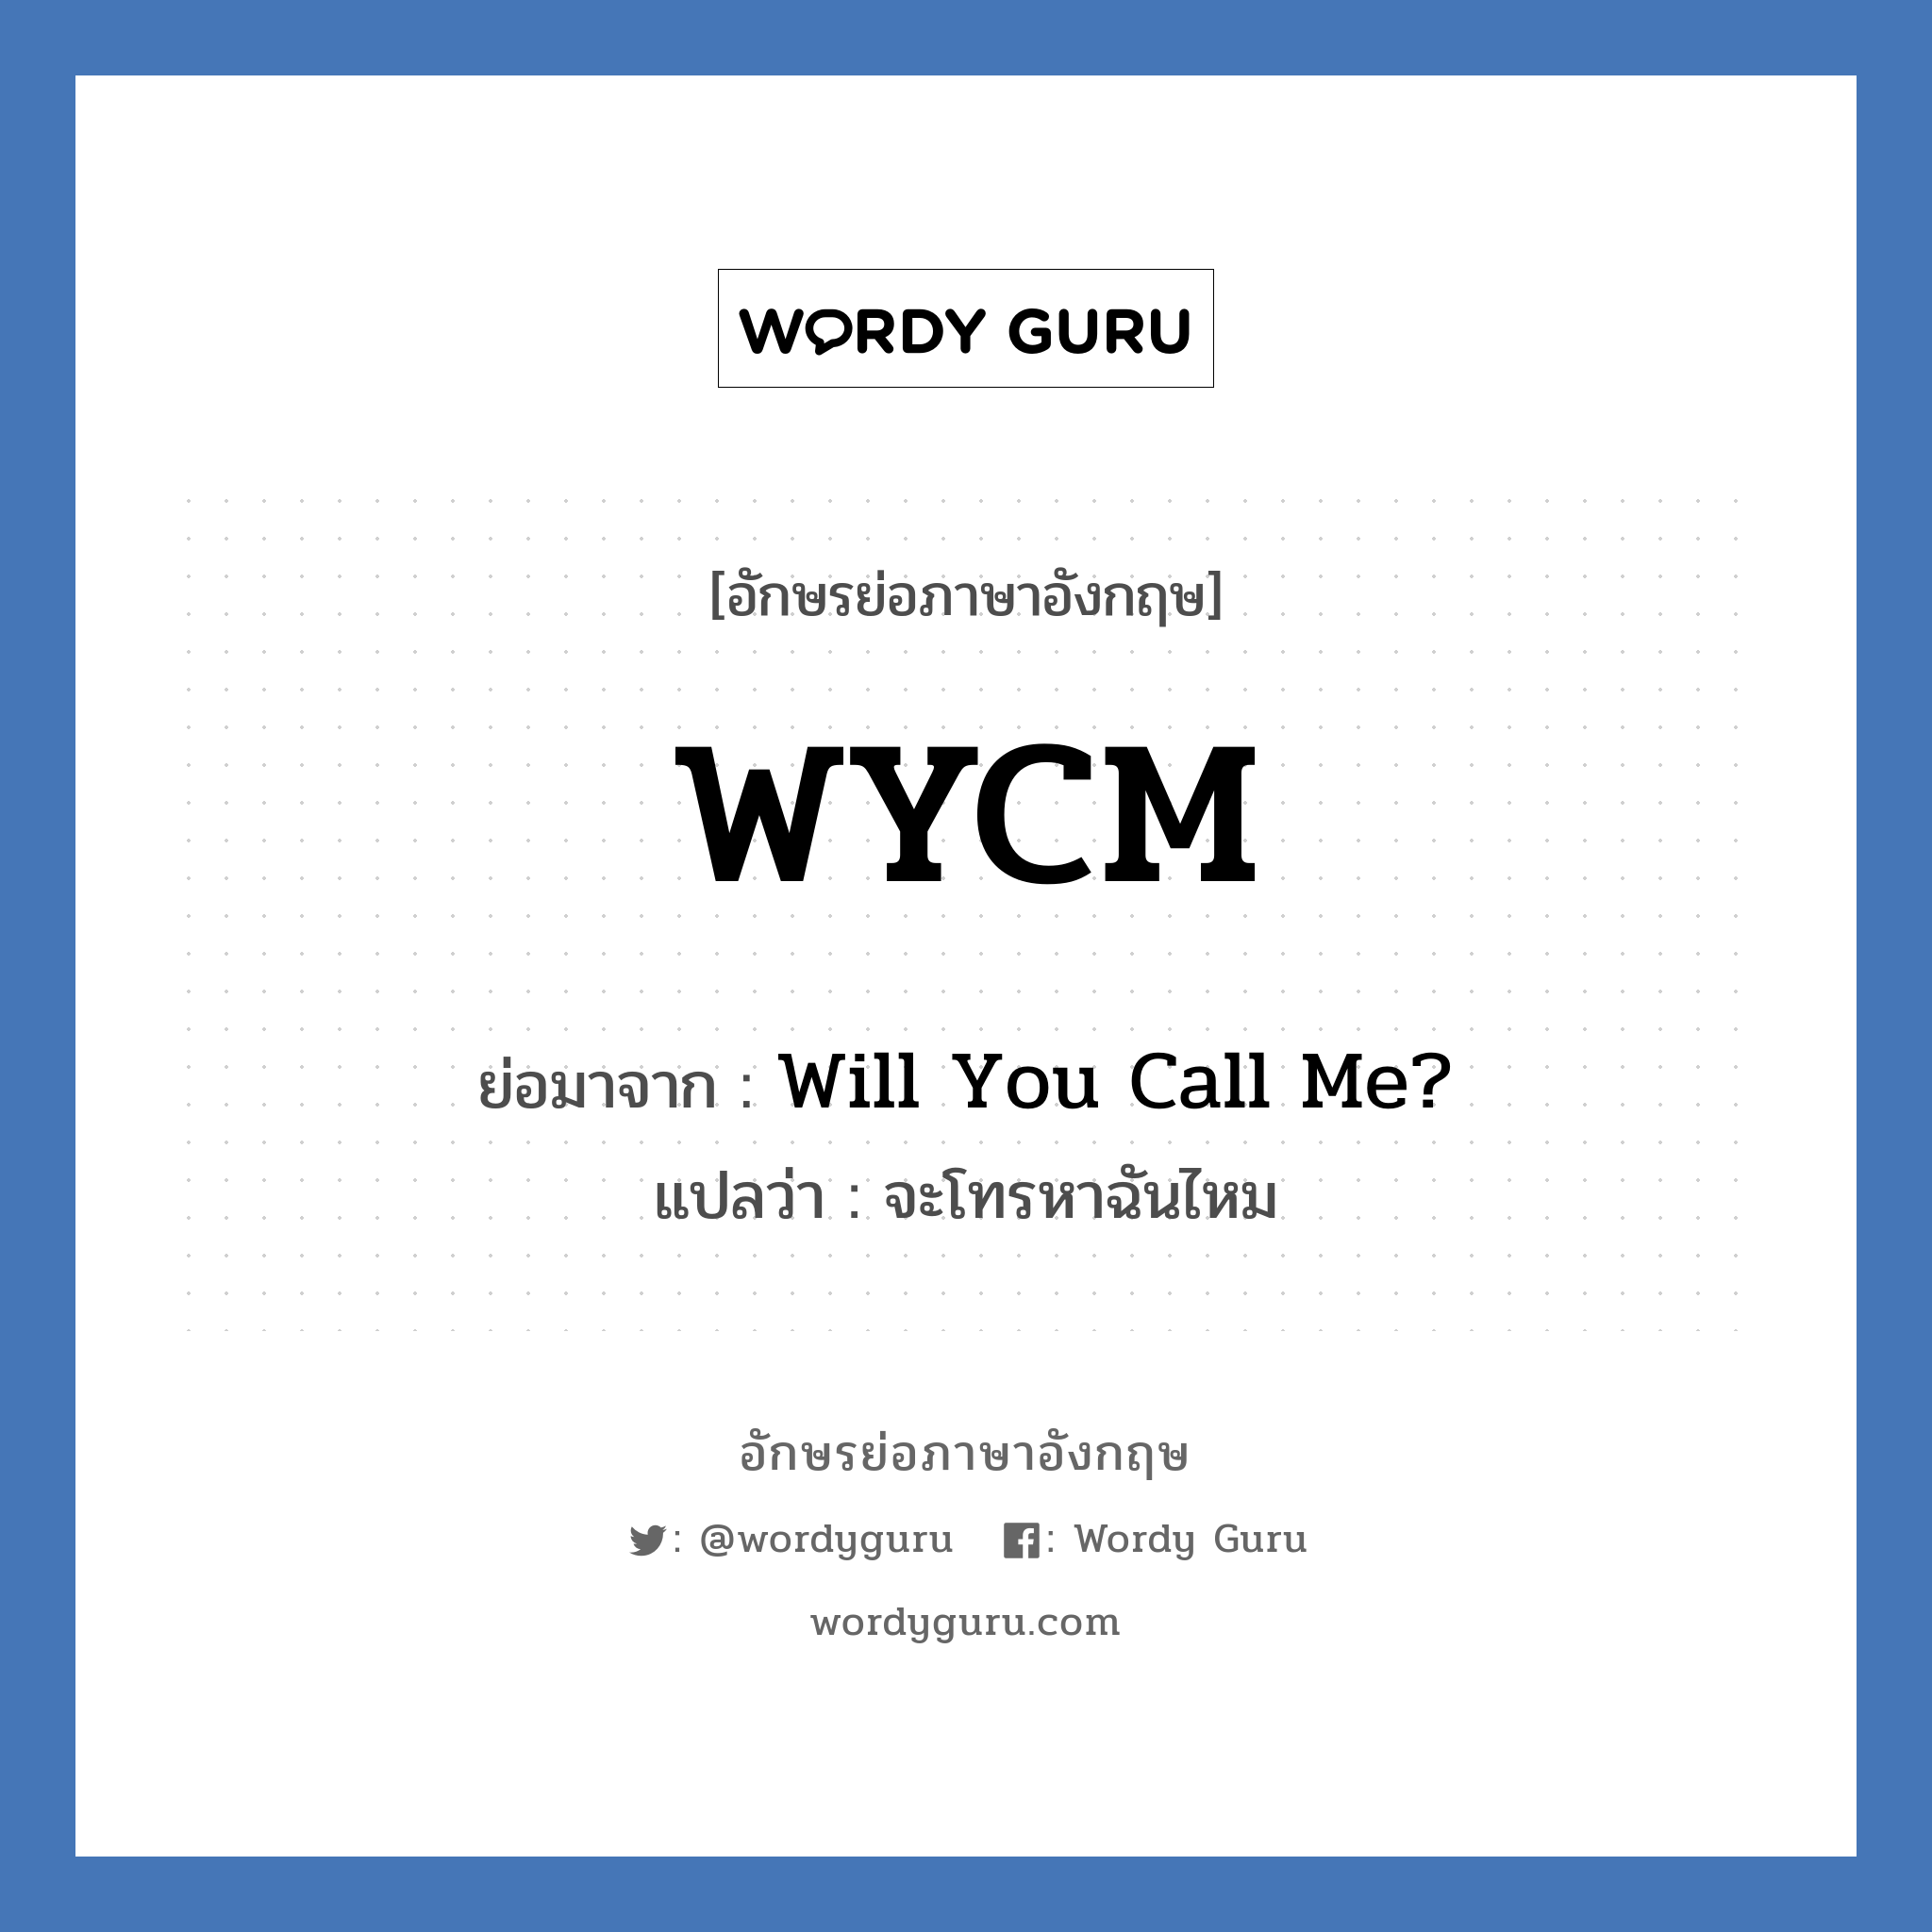 WYCM ย่อมาจาก? แปลว่า?, อักษรย่อภาษาอังกฤษ WYCM ย่อมาจาก Will You Call Me? แปลว่า จะโทรหาฉันไหม